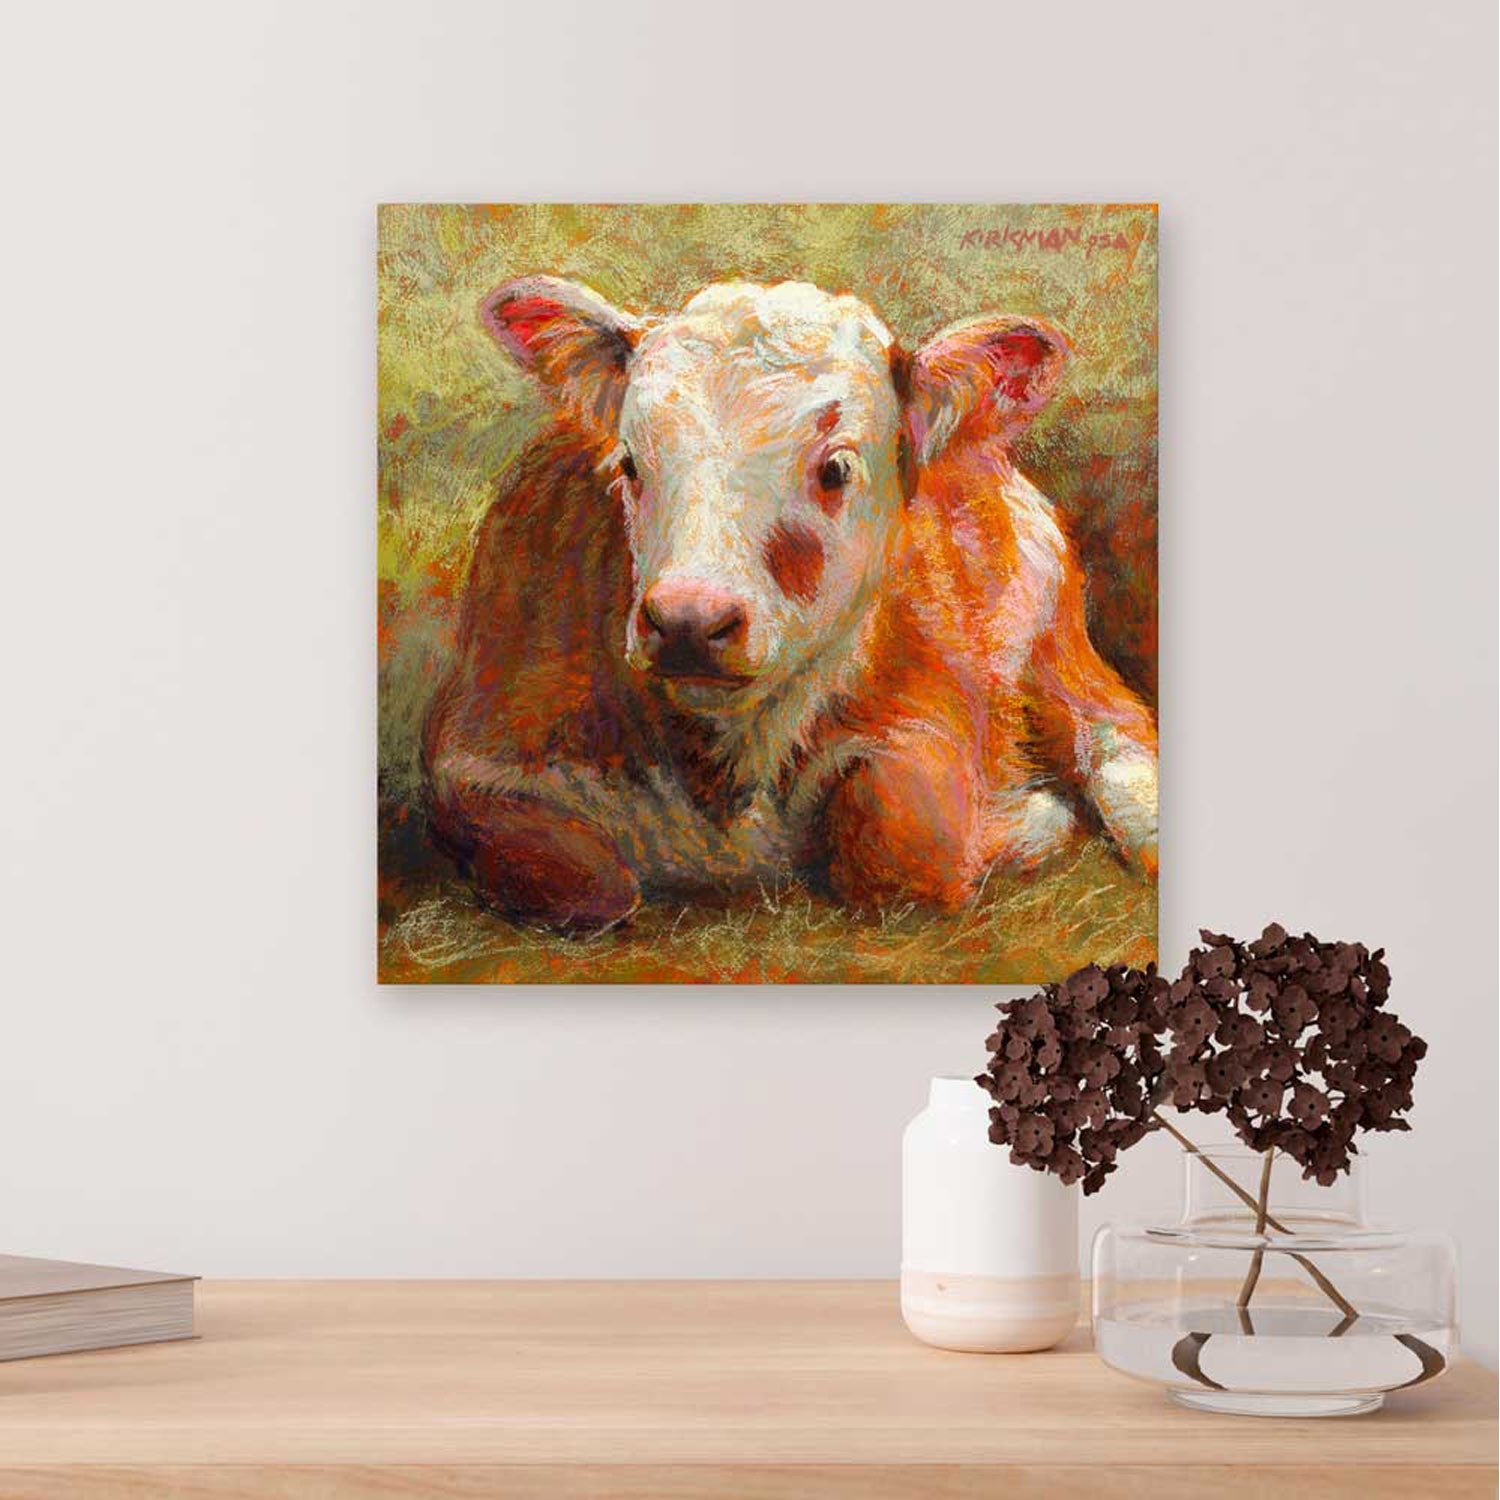 Pastoral Portraits - Resting Calf Canvas Wall Art - GreenBox Art